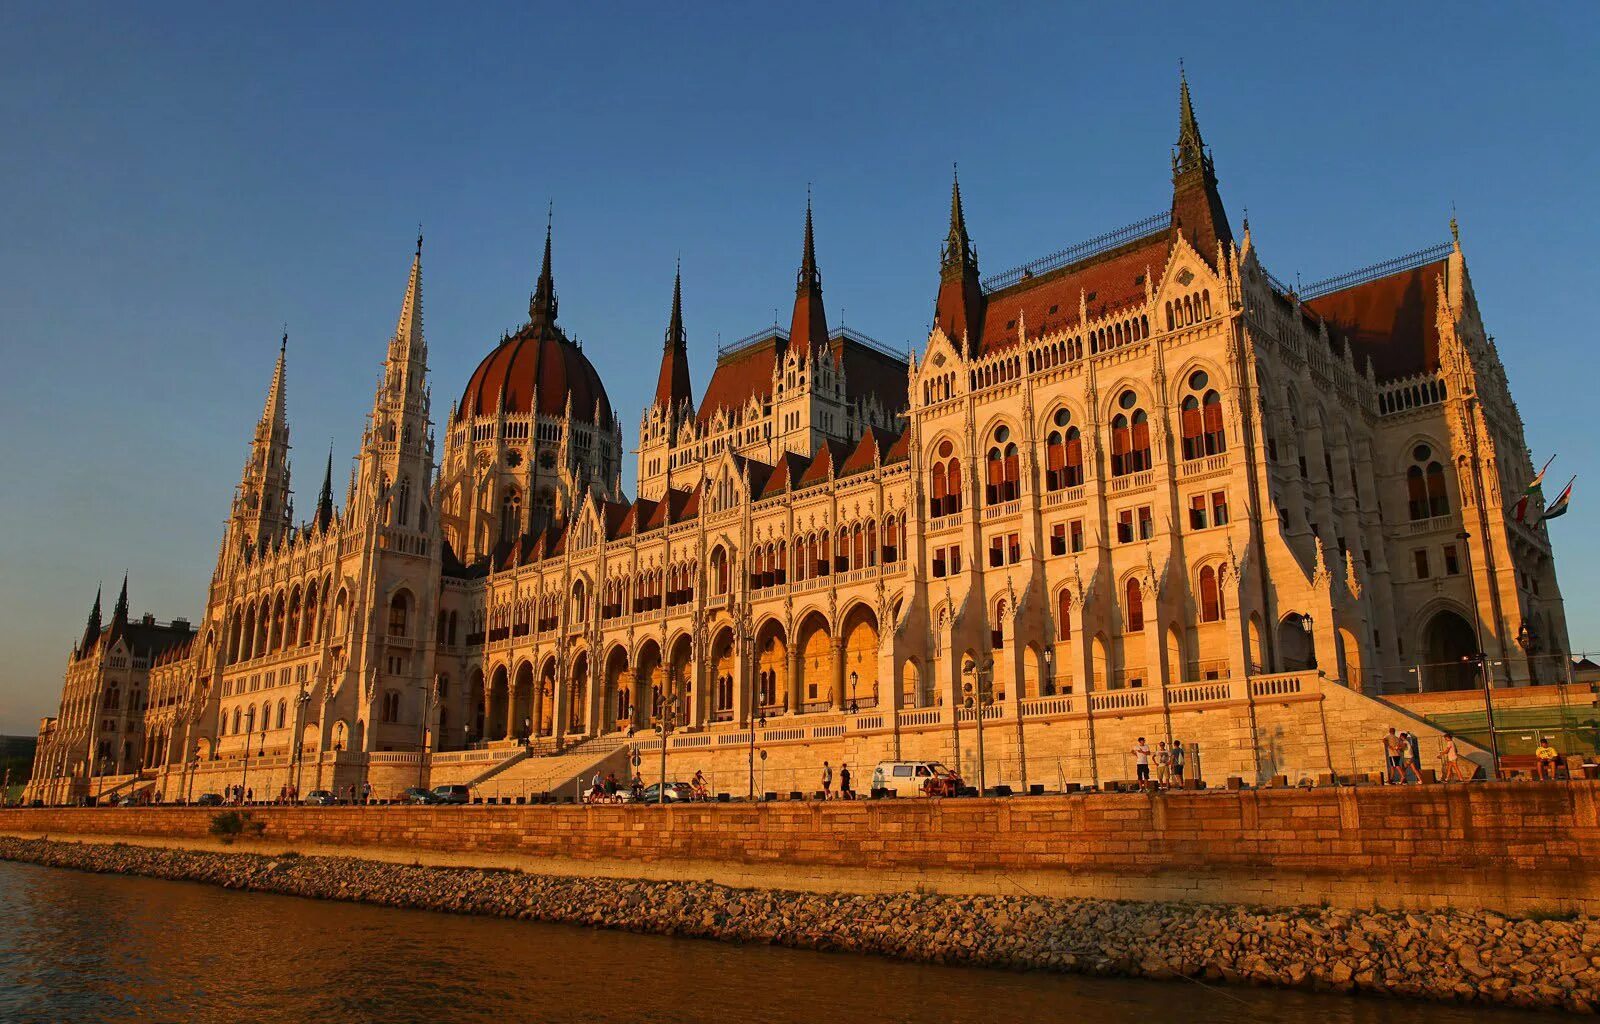 Достопримечательность какой страны является. 14. Здание венгерского парламента Будапешт. Визитная карточка Венгрии здание парламента в Будапеште. Здание парламента Венгрии (Будапешт, Венгрия) вид сверху. Архитектура Европы Будапешт.